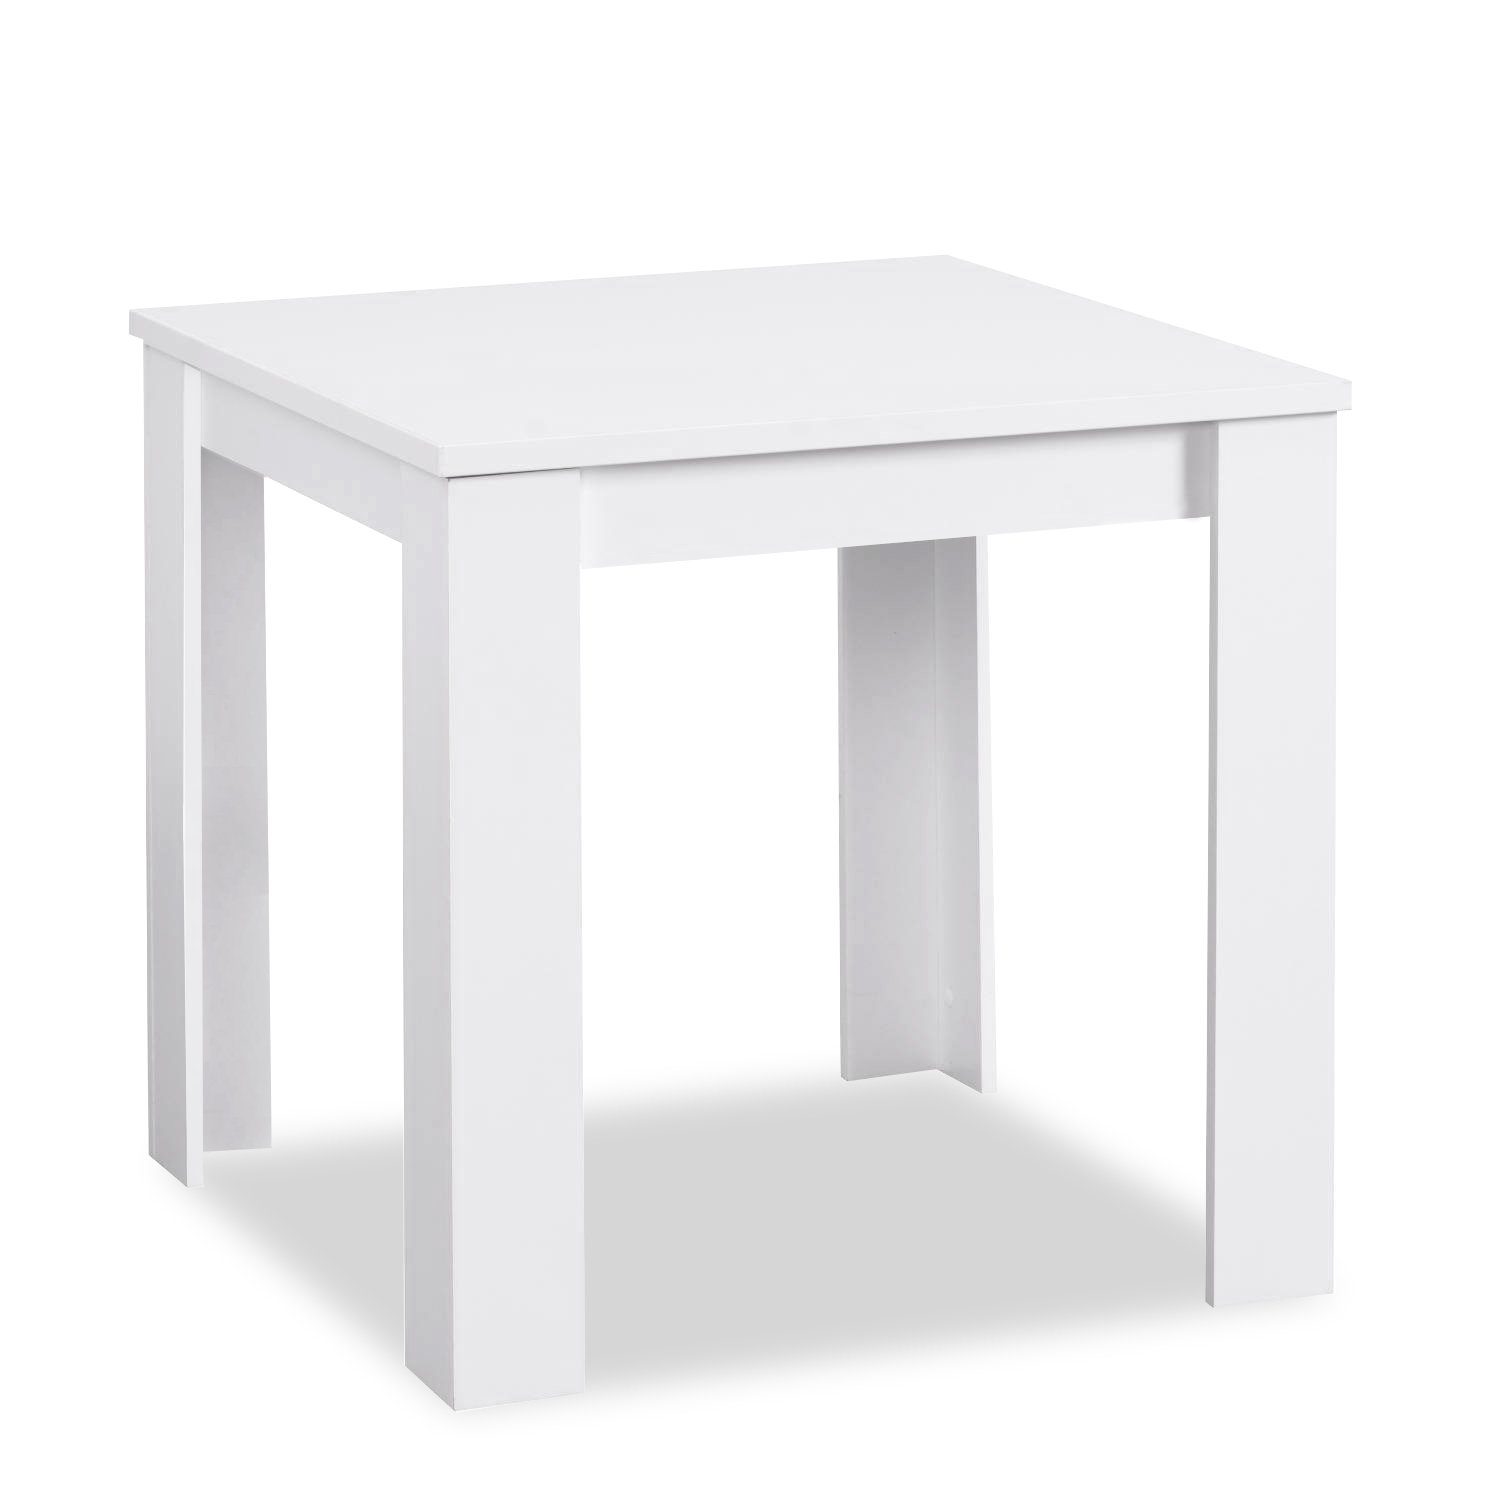 Polsterstuhl, cm Homestyle4u Essgruppe Weiß 80x80 (Komplett-Set, 3-tlg) 2 Stühlen mit Esstisch